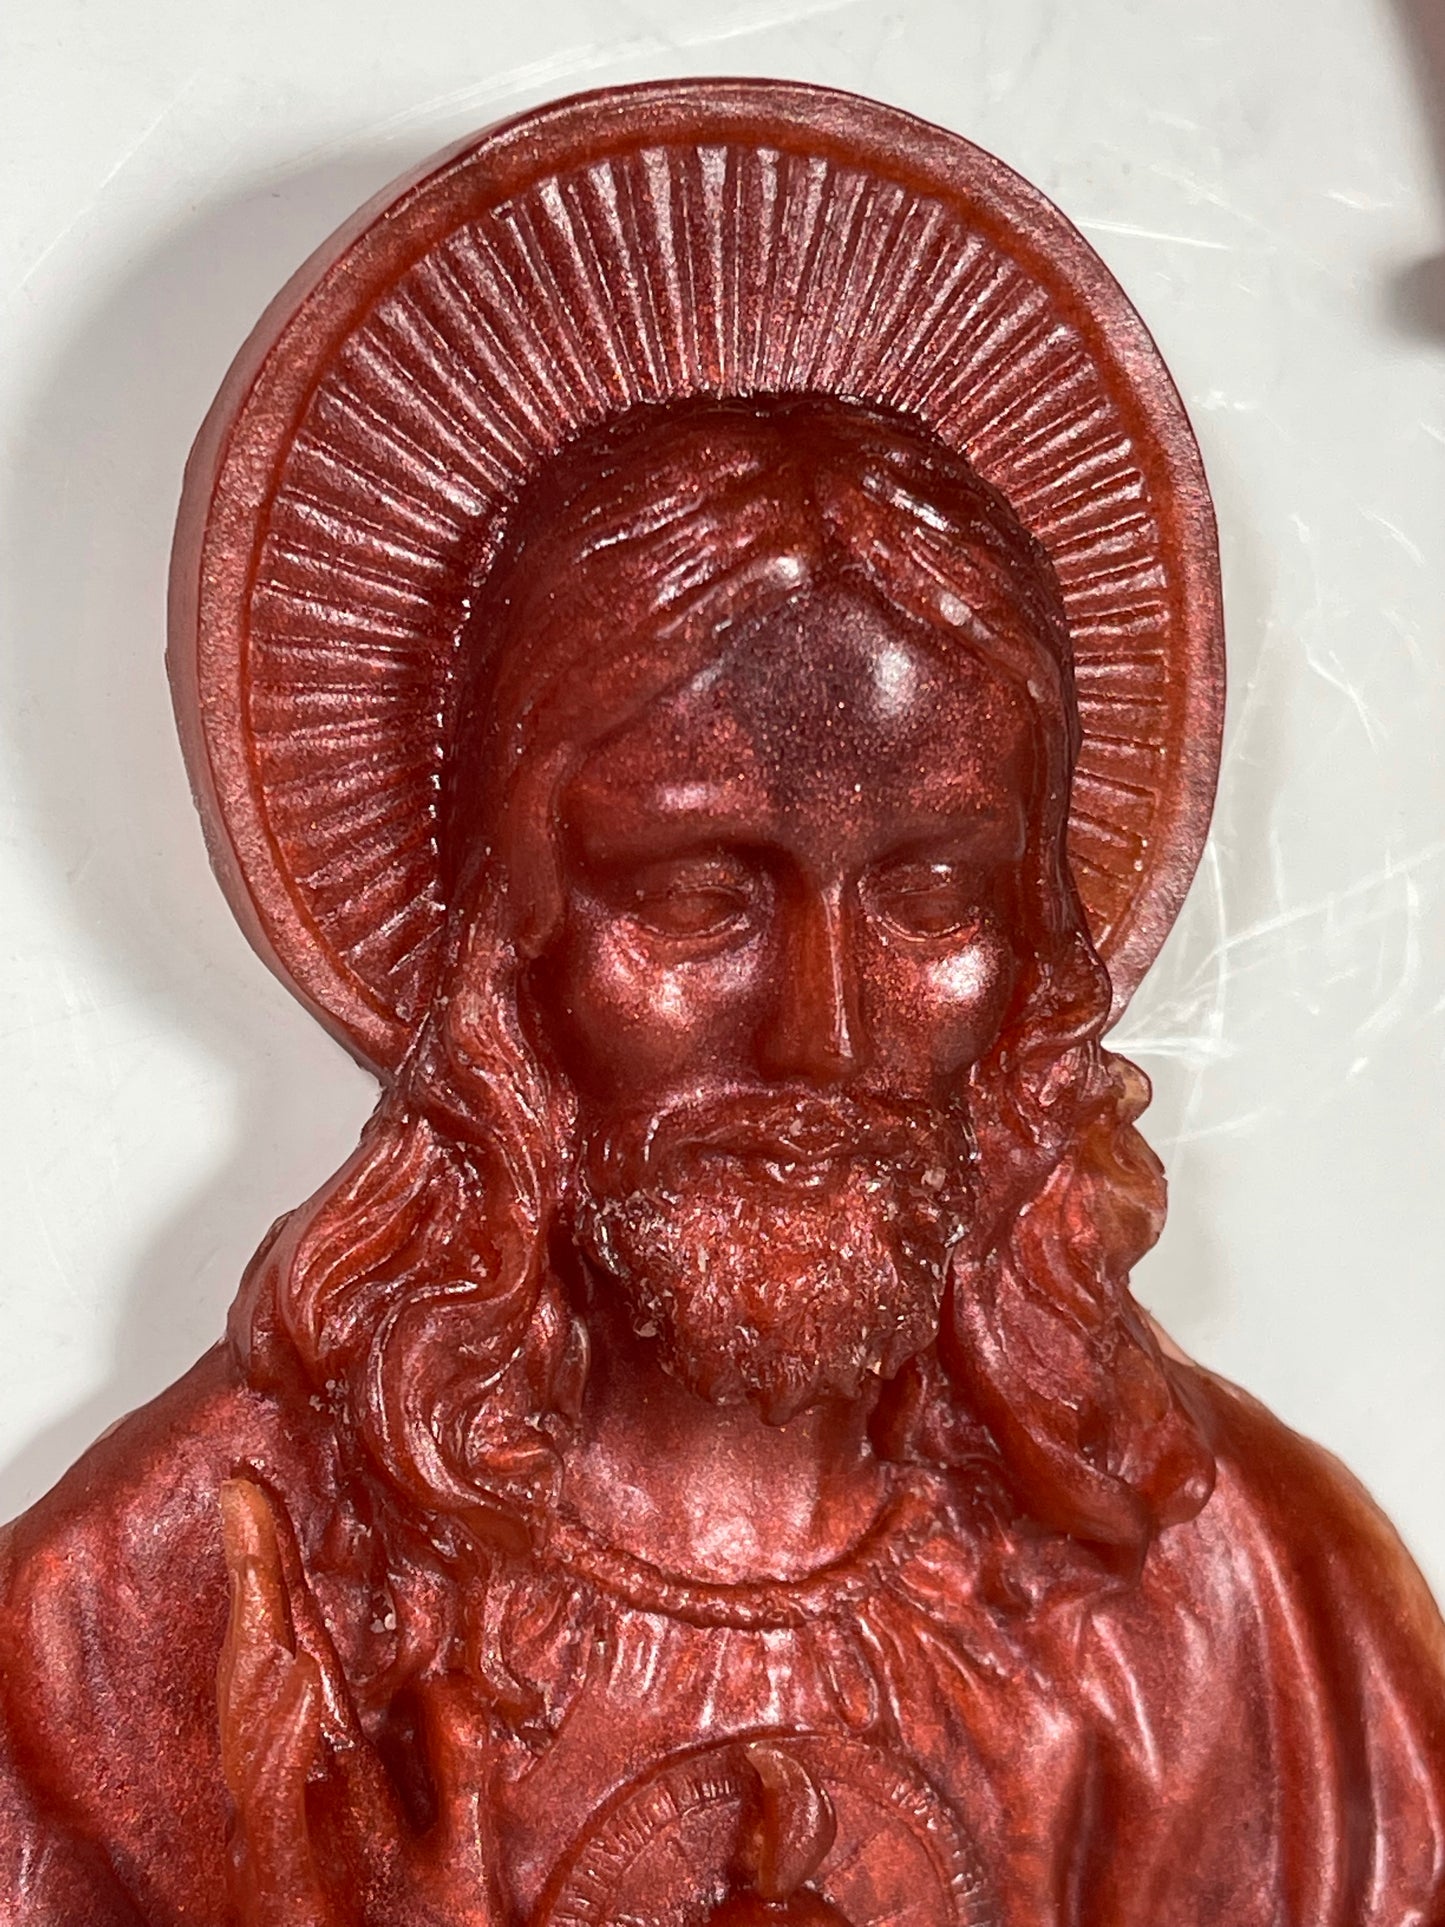 Bootleg Jesus: Red Religio